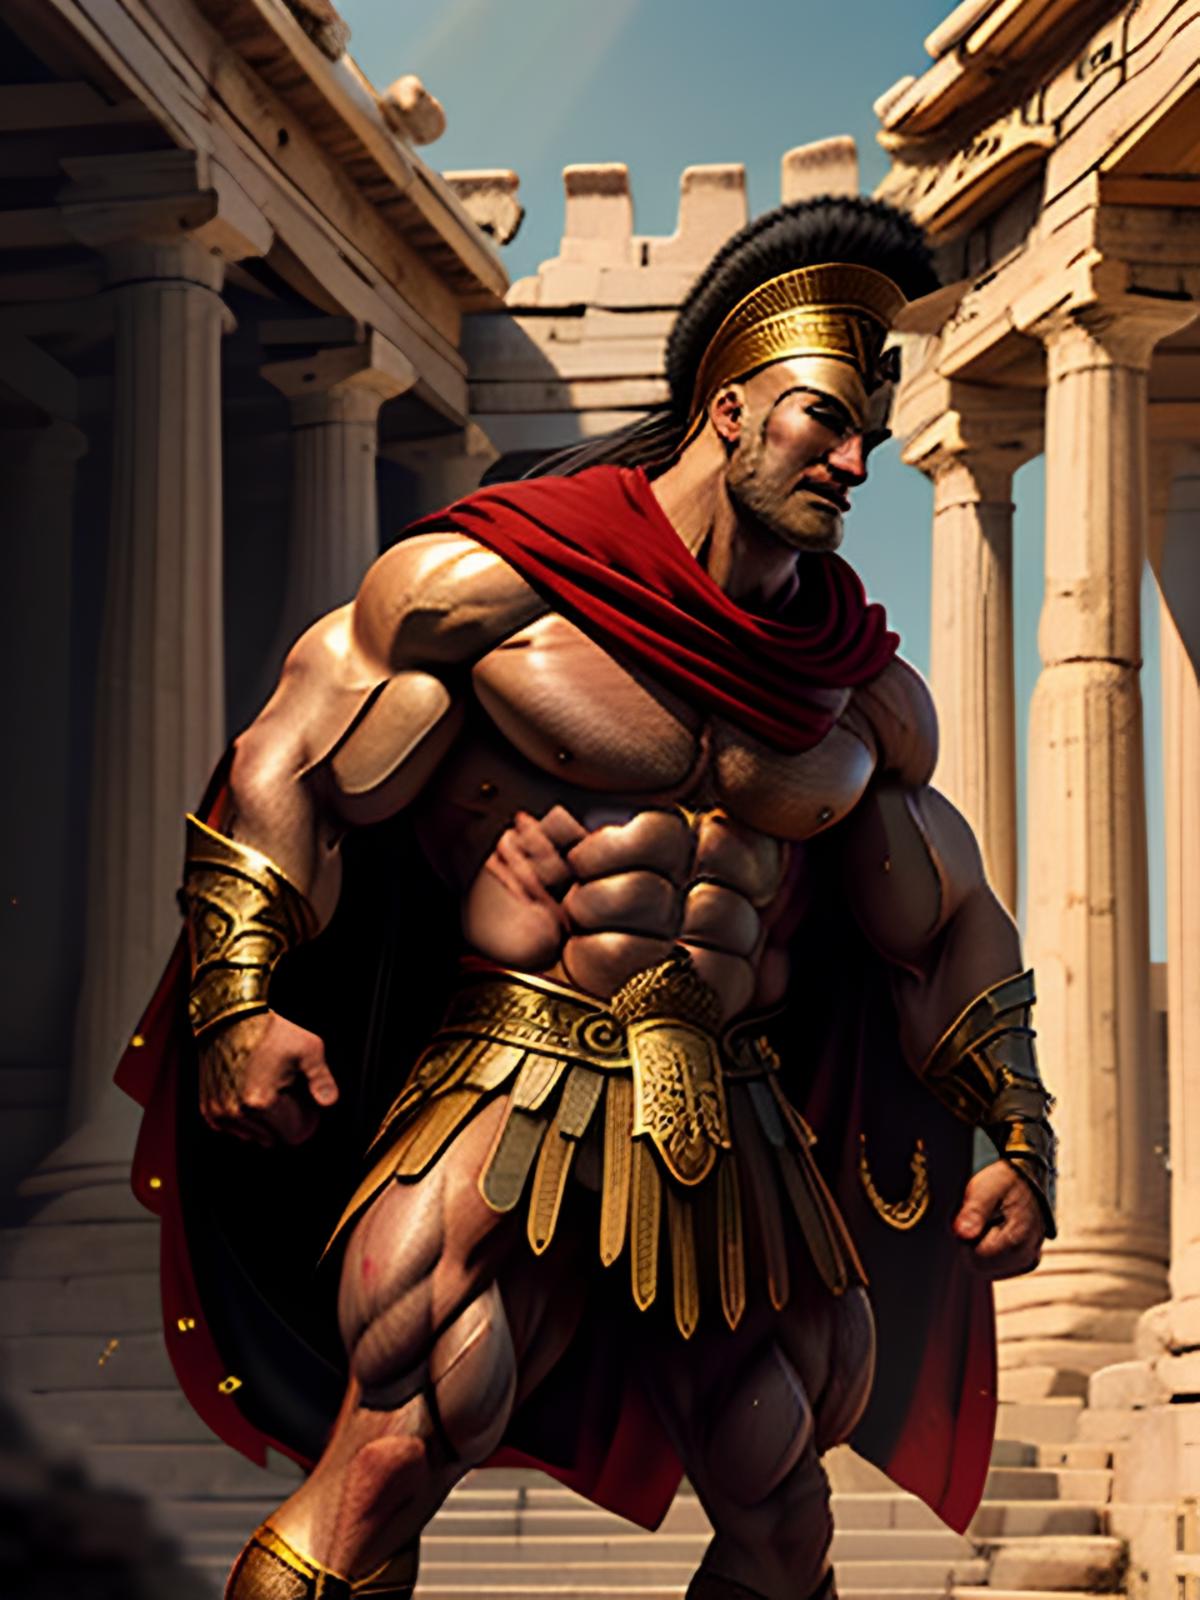 Spartan image